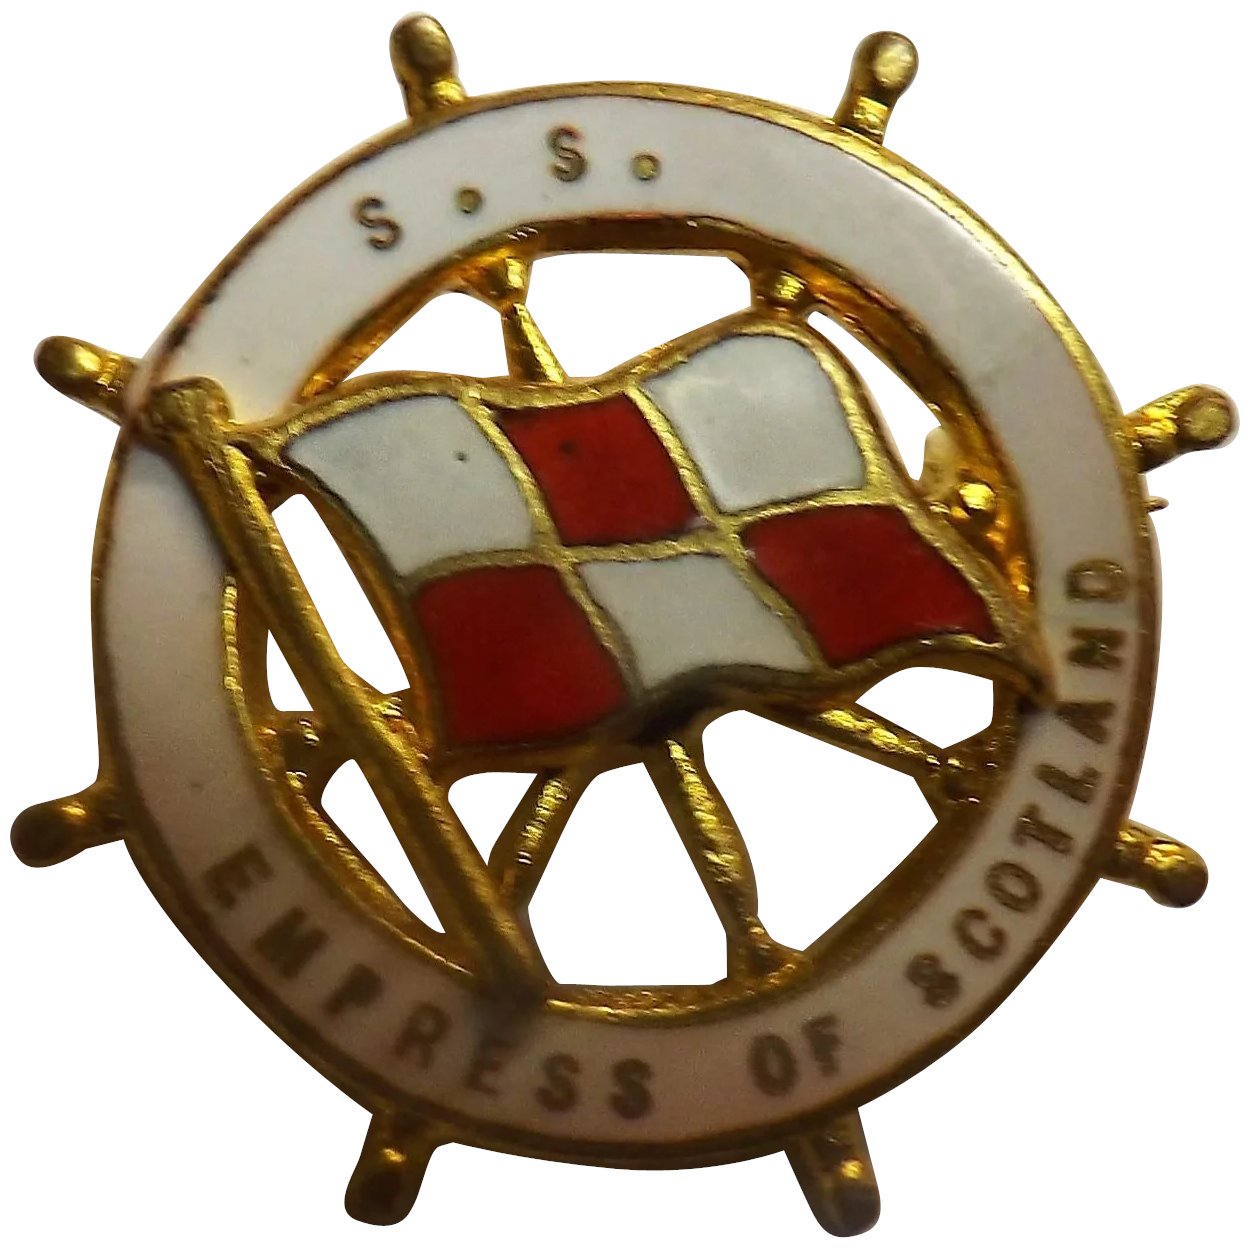 S.S. Empress of Scotland Ships Souvenir Badge